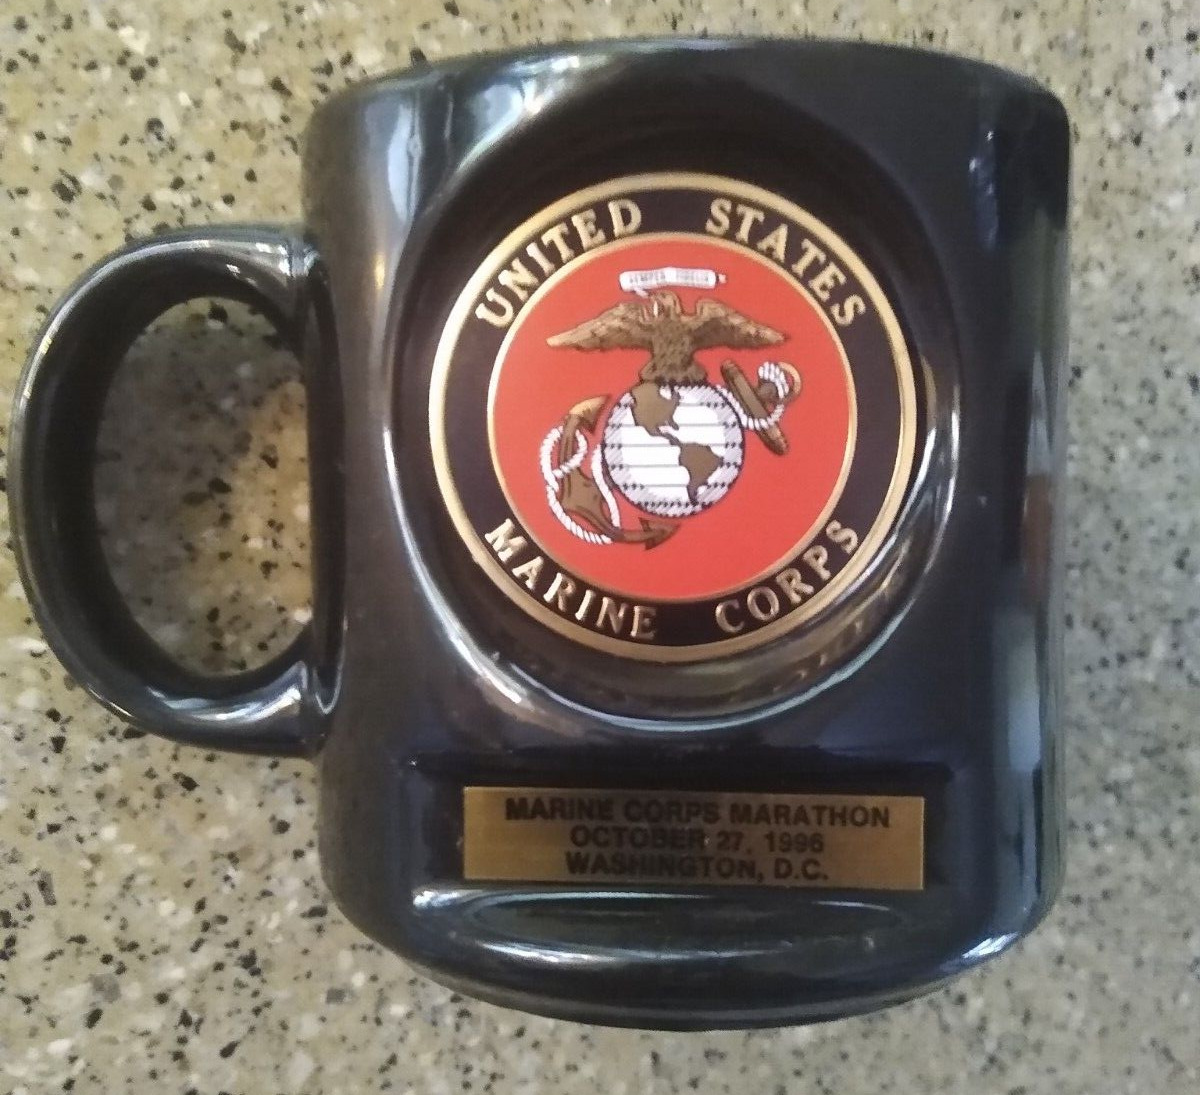 1996 USMC Marines Black Coffee Mug United States Marine Corps Marathon